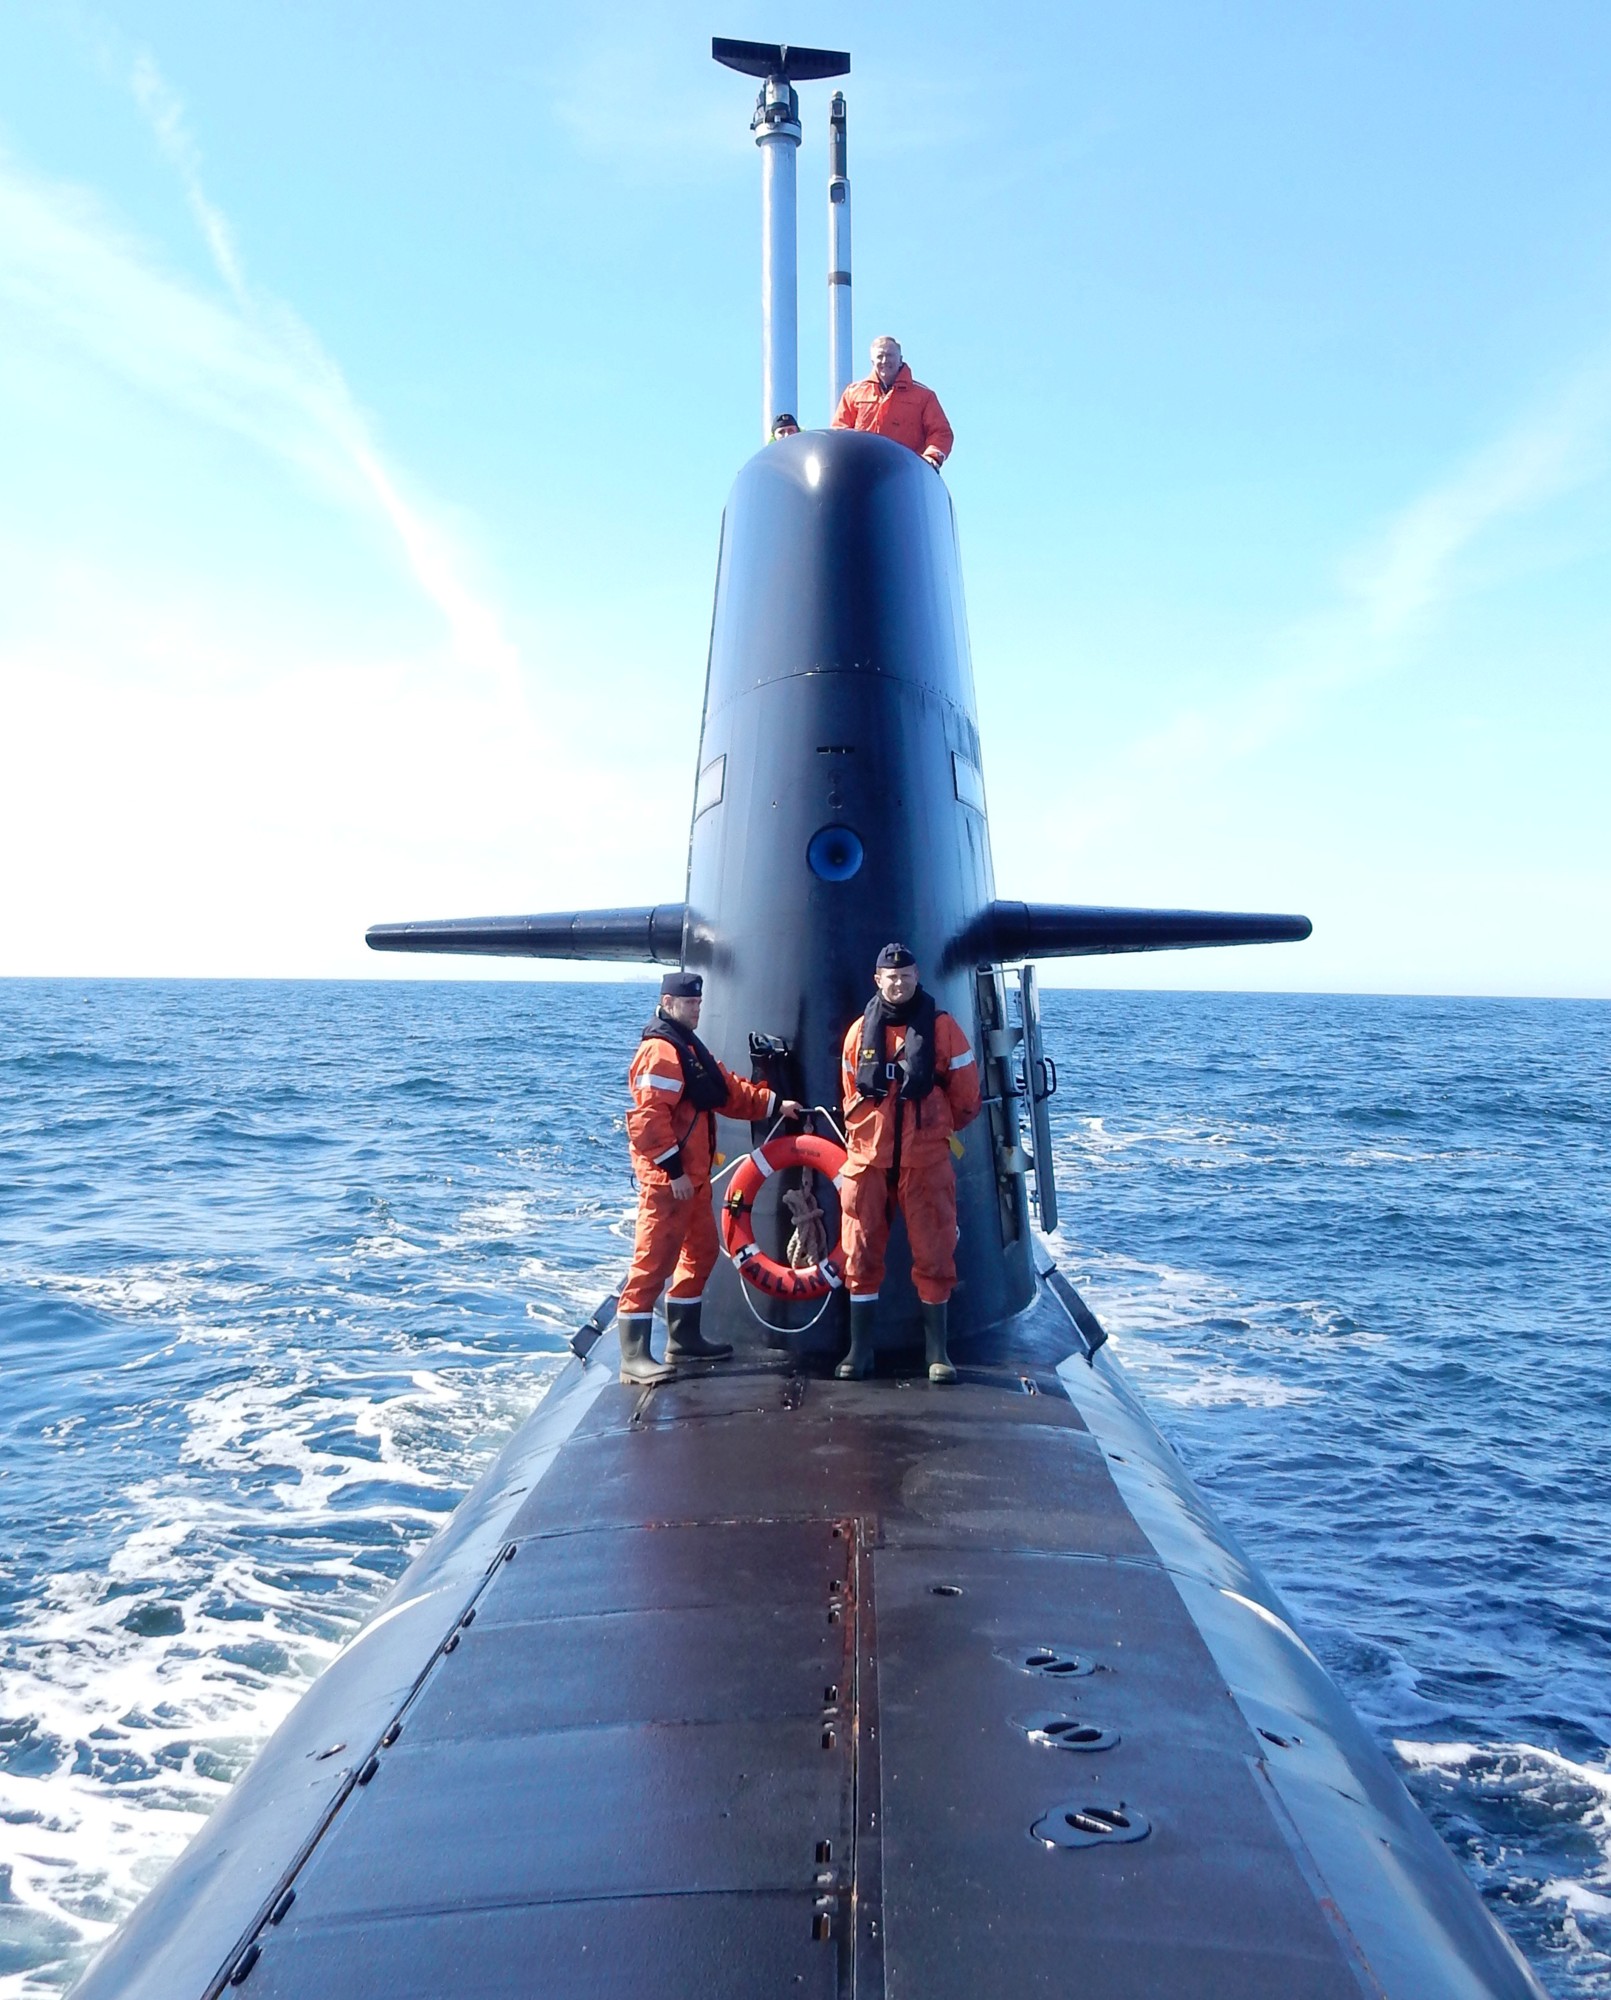 hswms hms halland hnd gotland class submarine ssk swedish navy svenska marinen försvarsmakten kockums 05